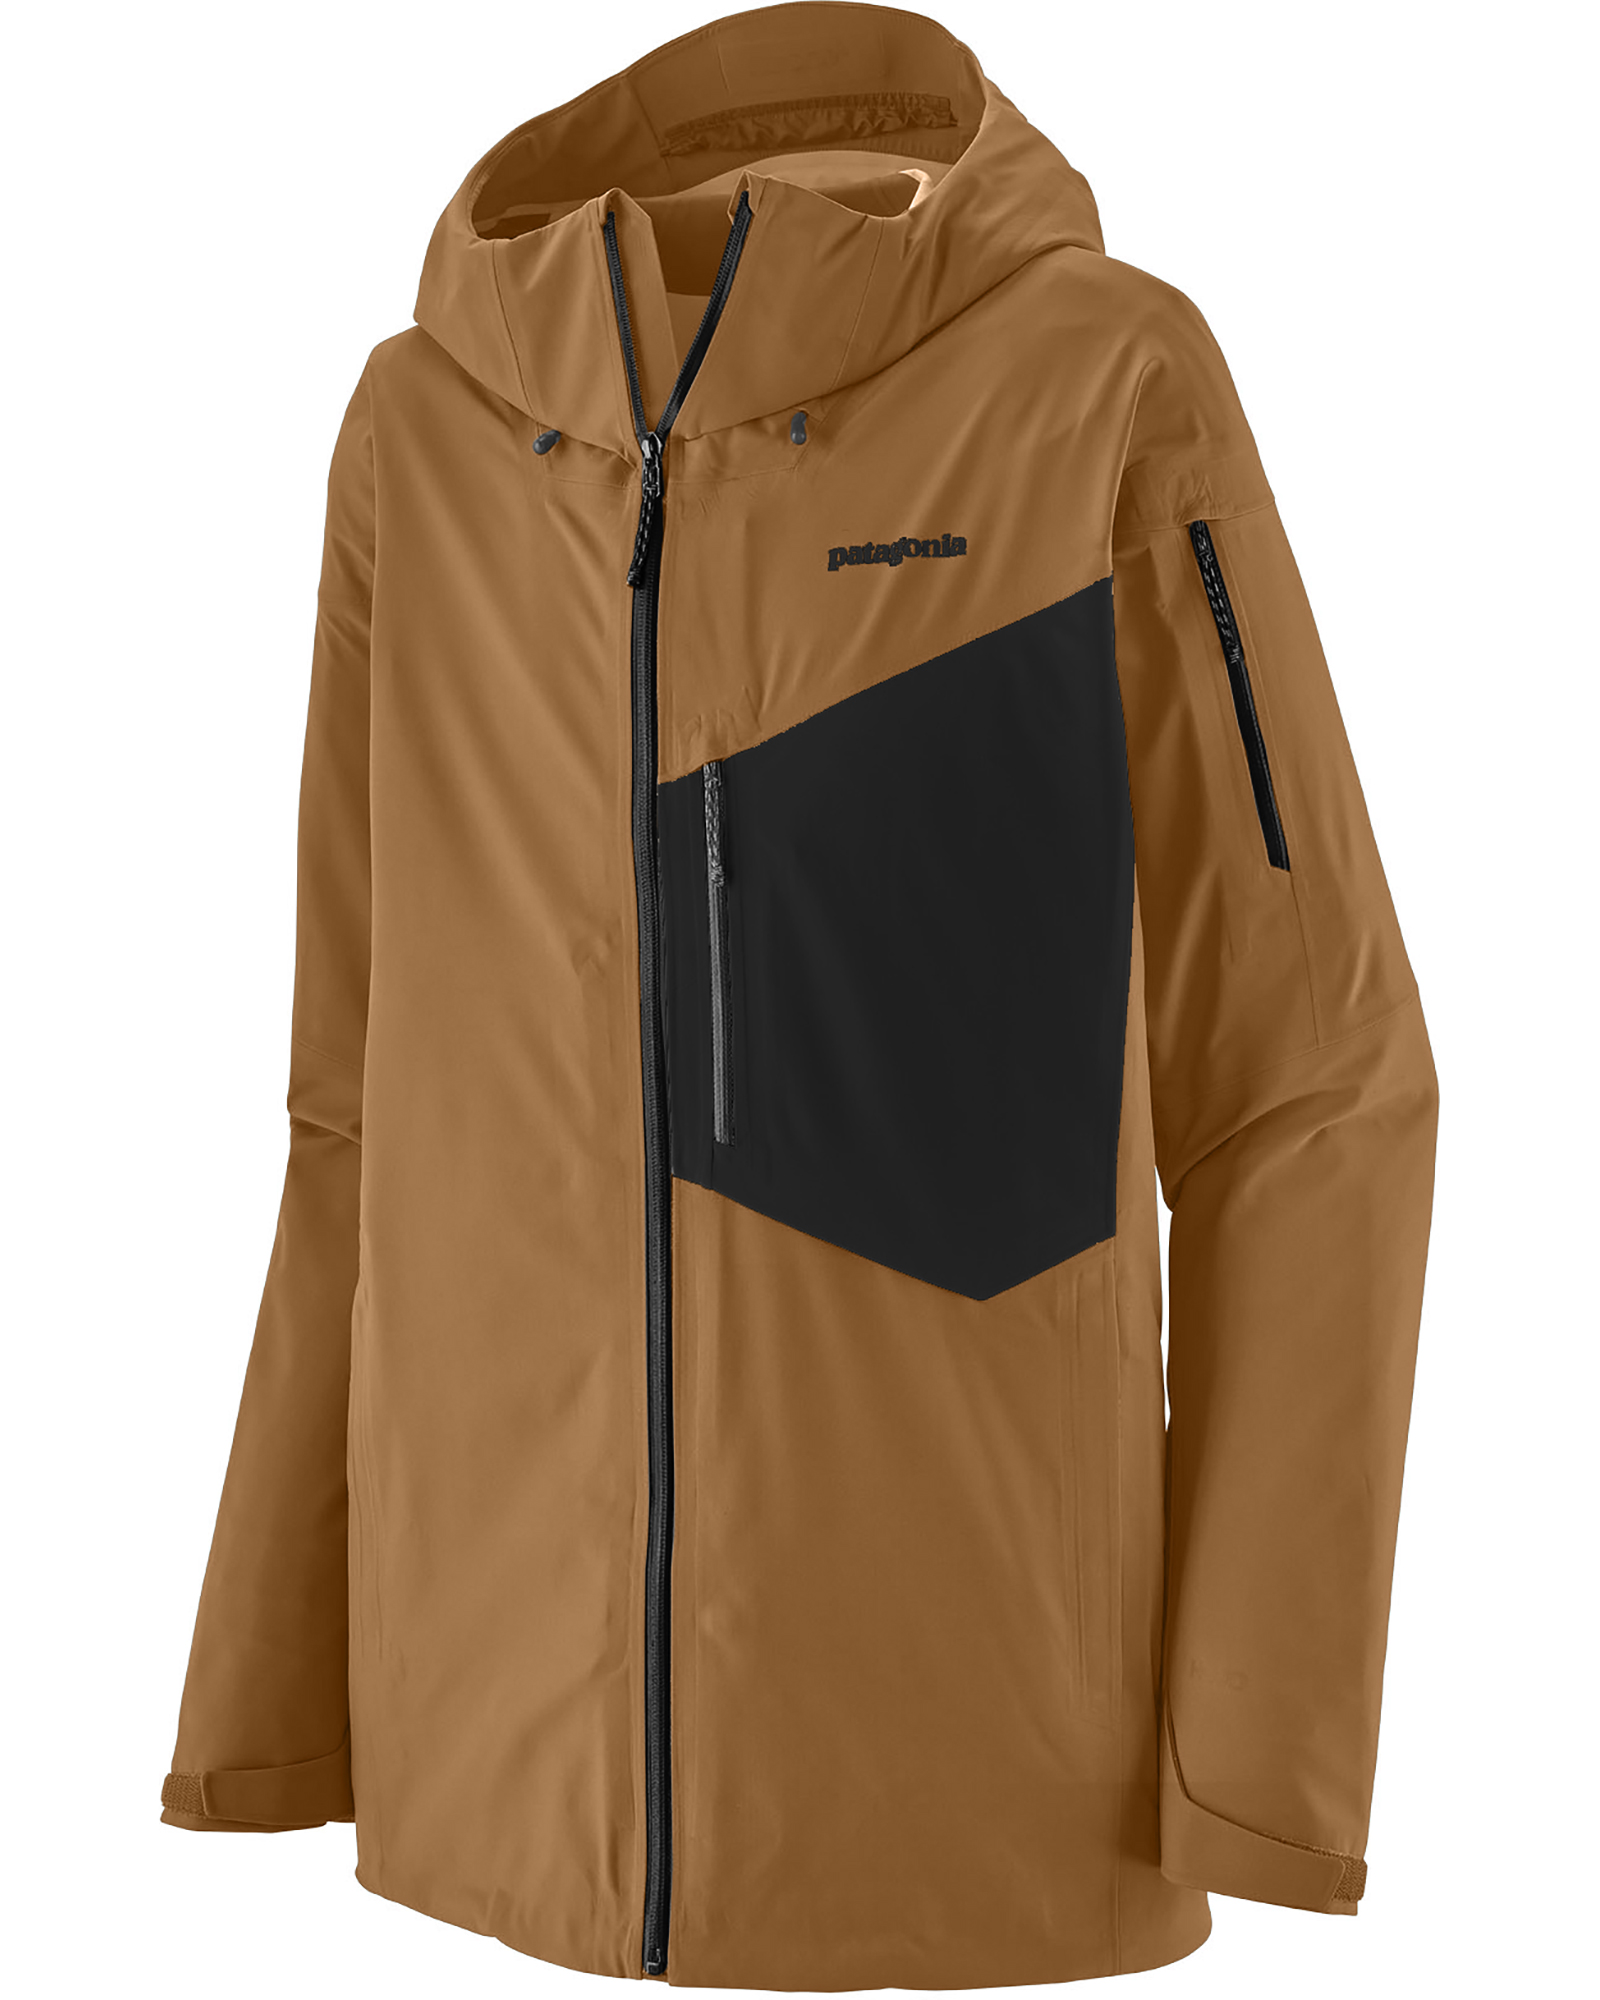 Patagonia Men’s Snowdrifter Jacket - Grayling Brown/Black XL